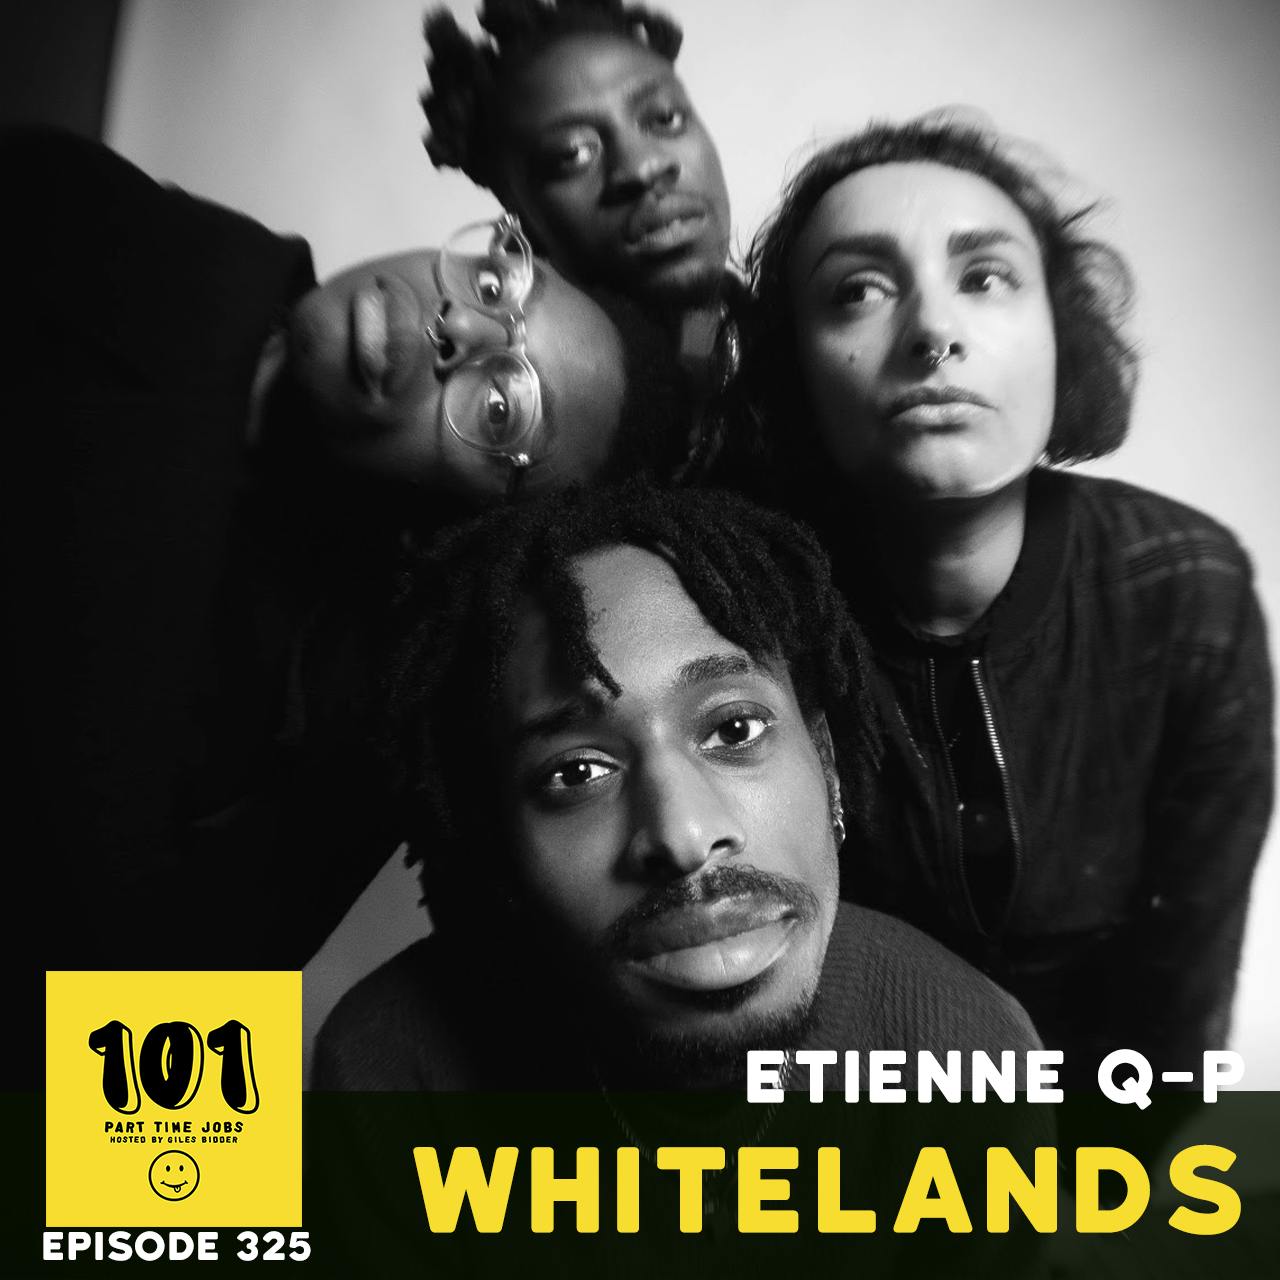 Etienne (Whitelands) - "It's a lot"